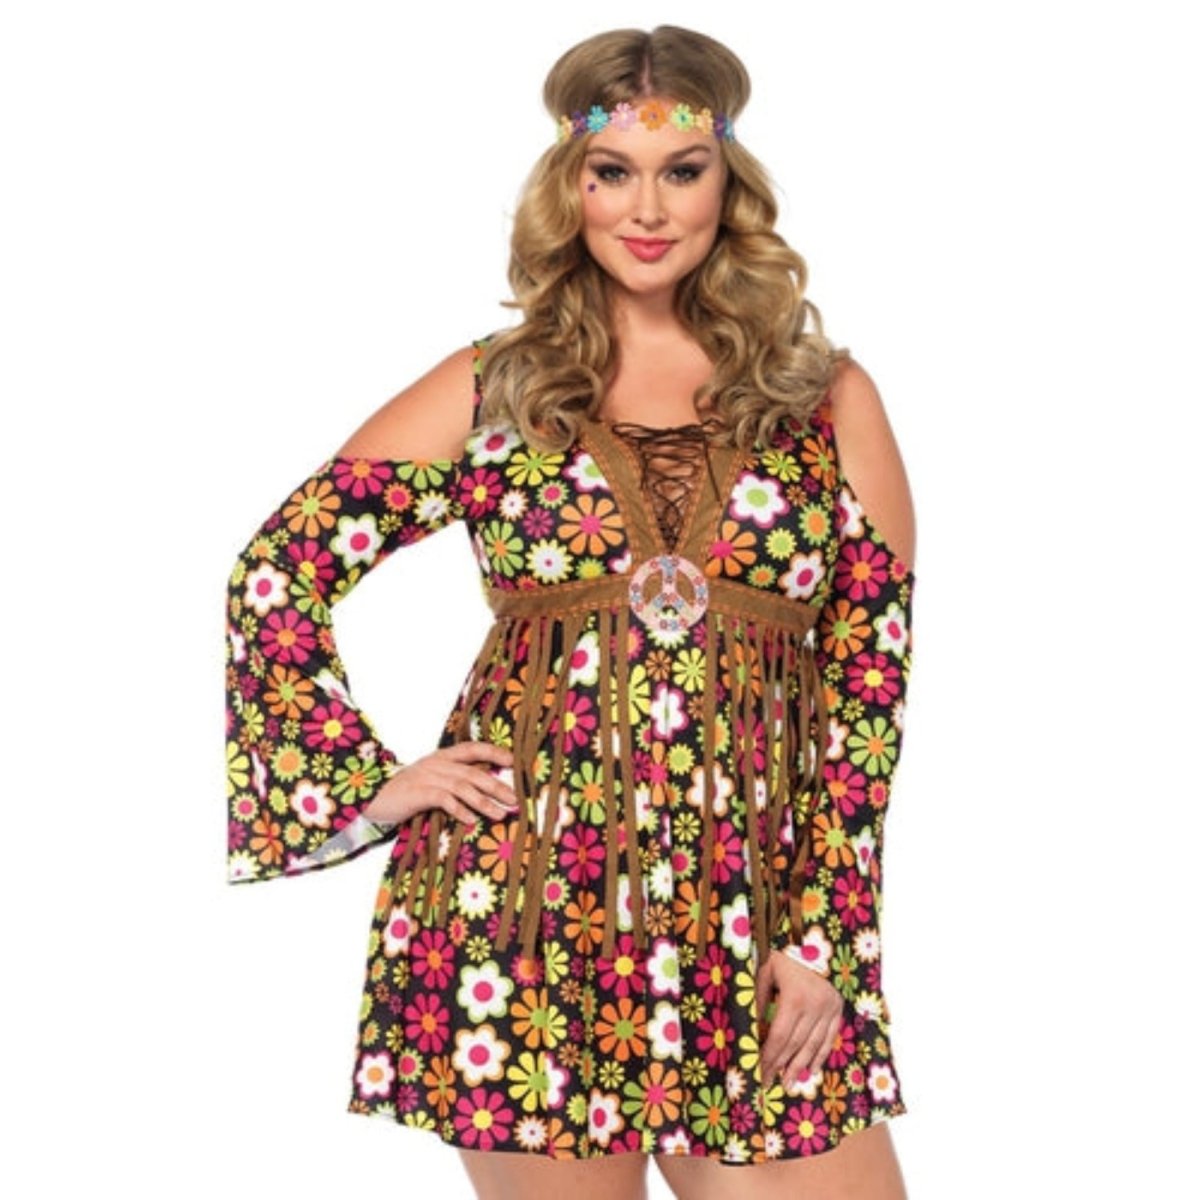 Starflower Hippie Dress Costume - worldclasscostumes